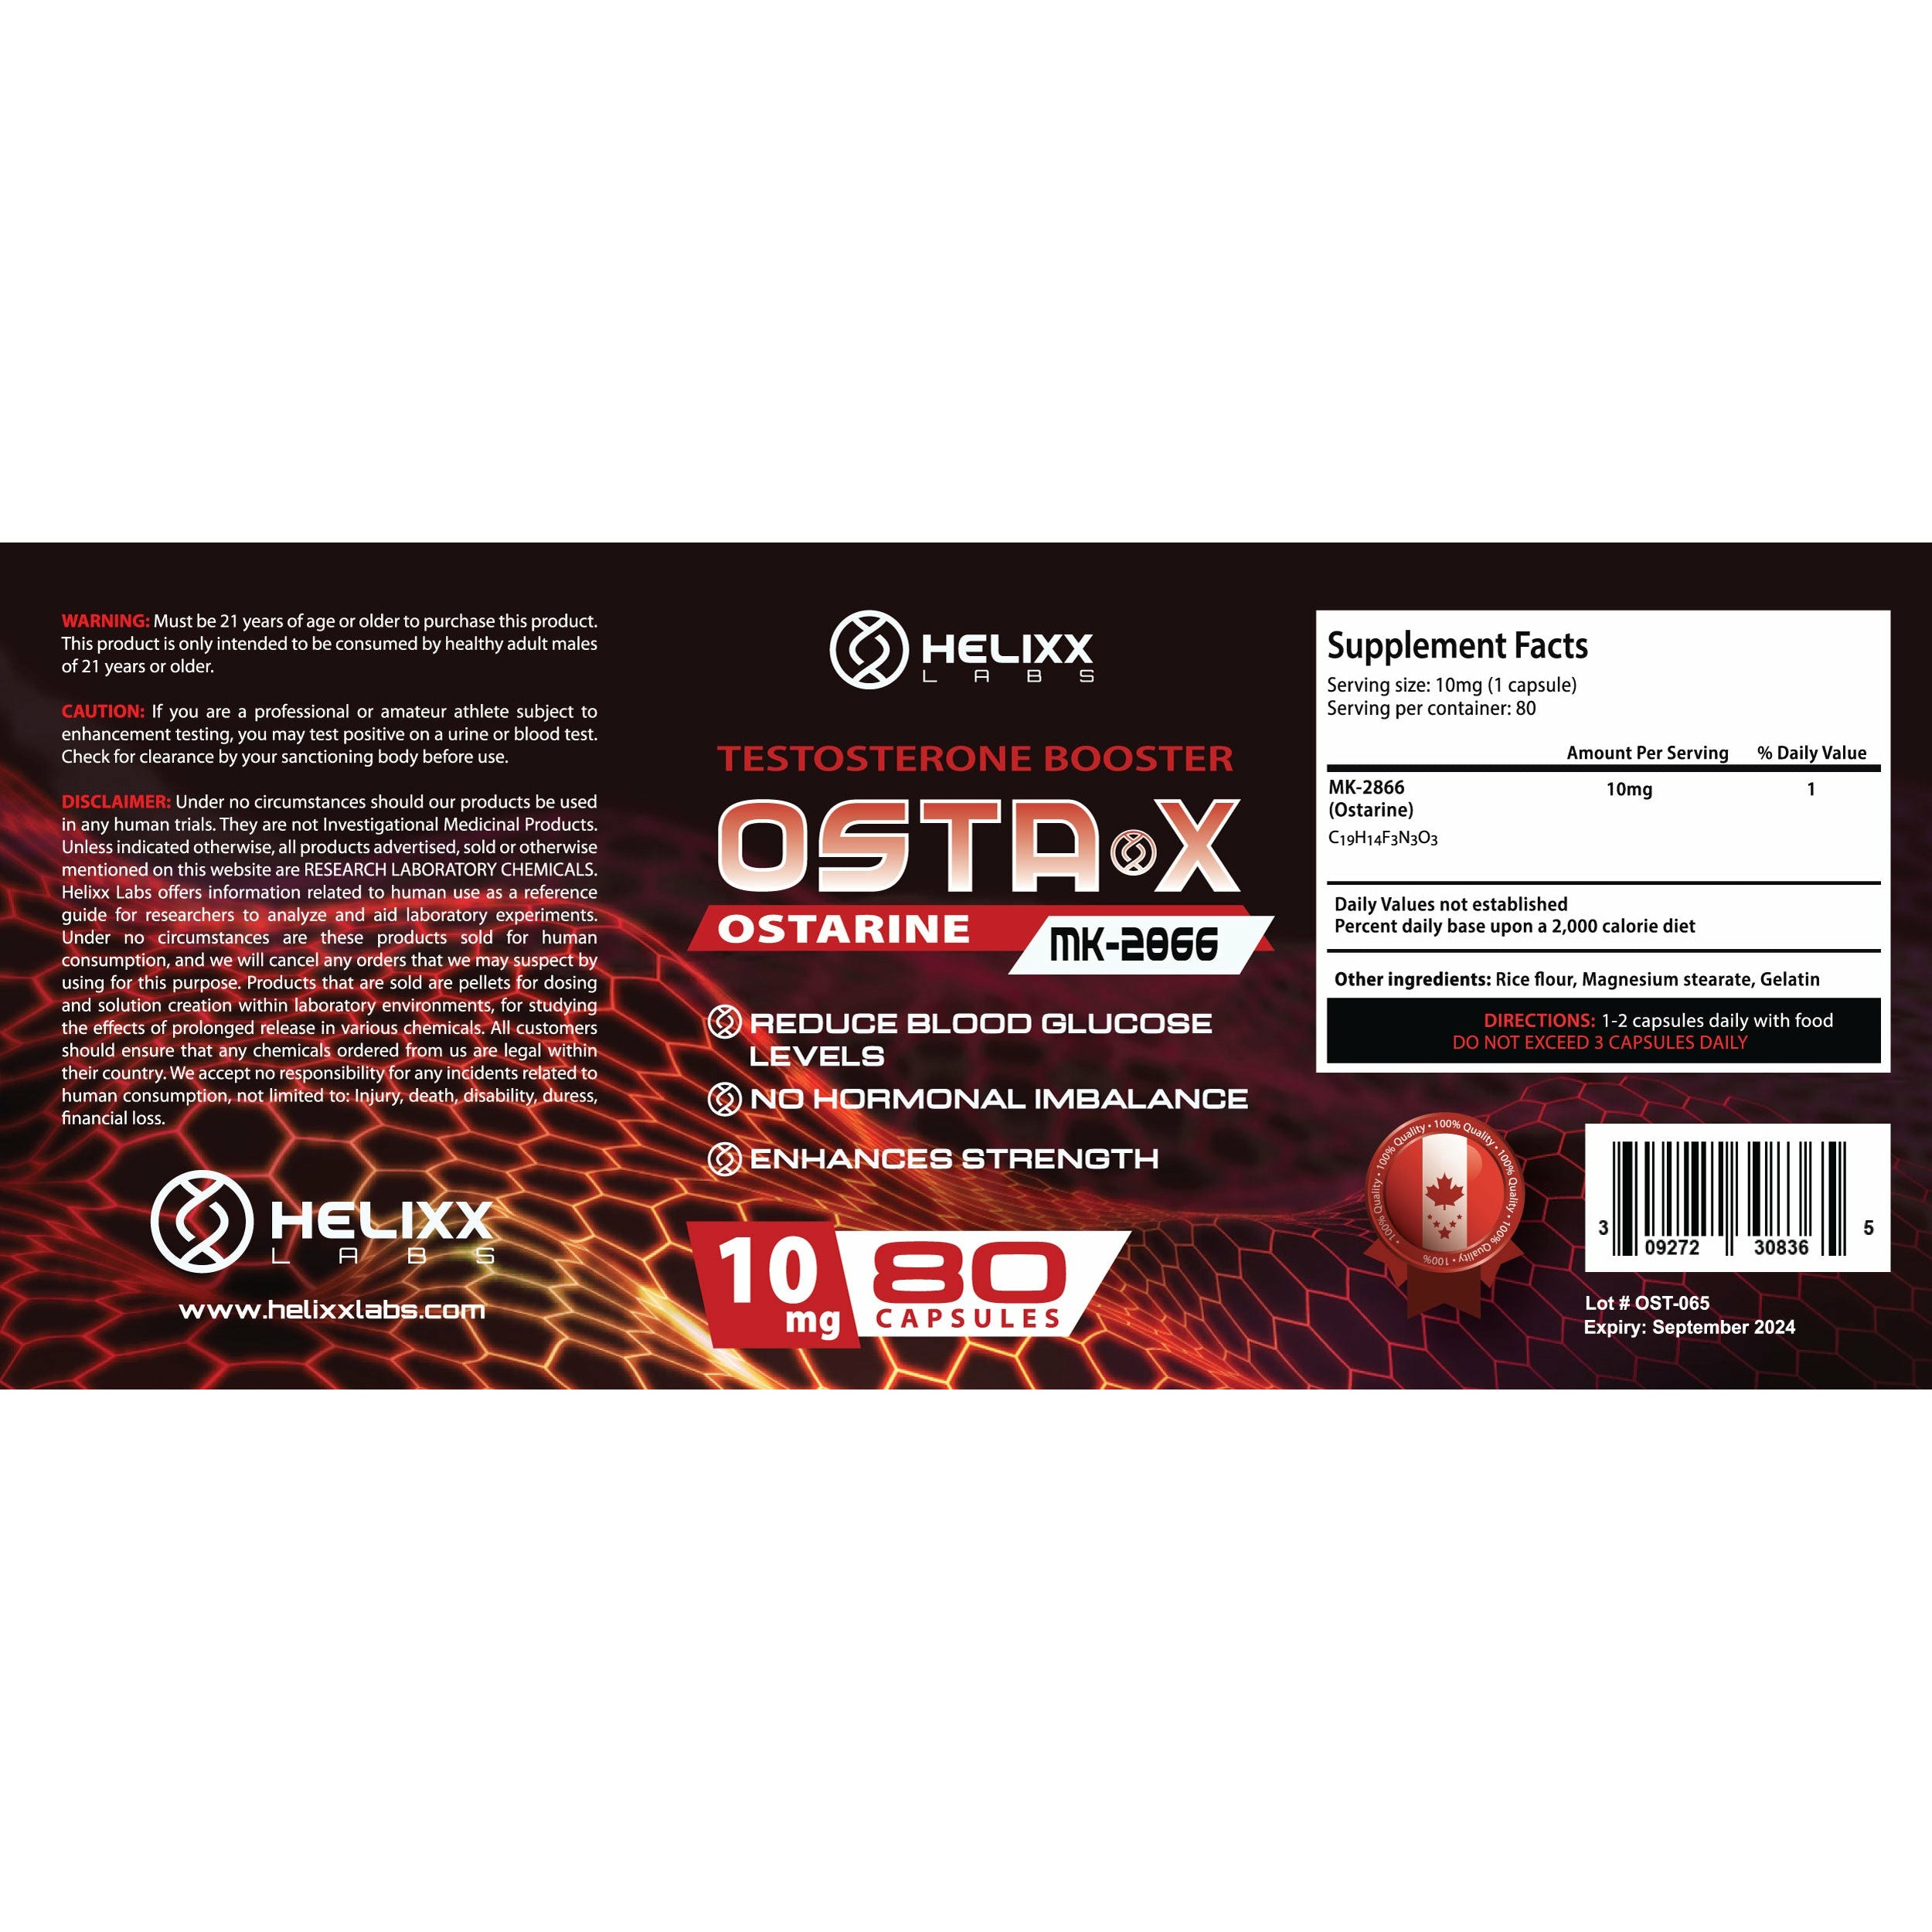 Helixx OSTA X (10mg – 80 capsules) helixx-osta-x-10mg-80-capsules Vitamins & Supplements Helixx